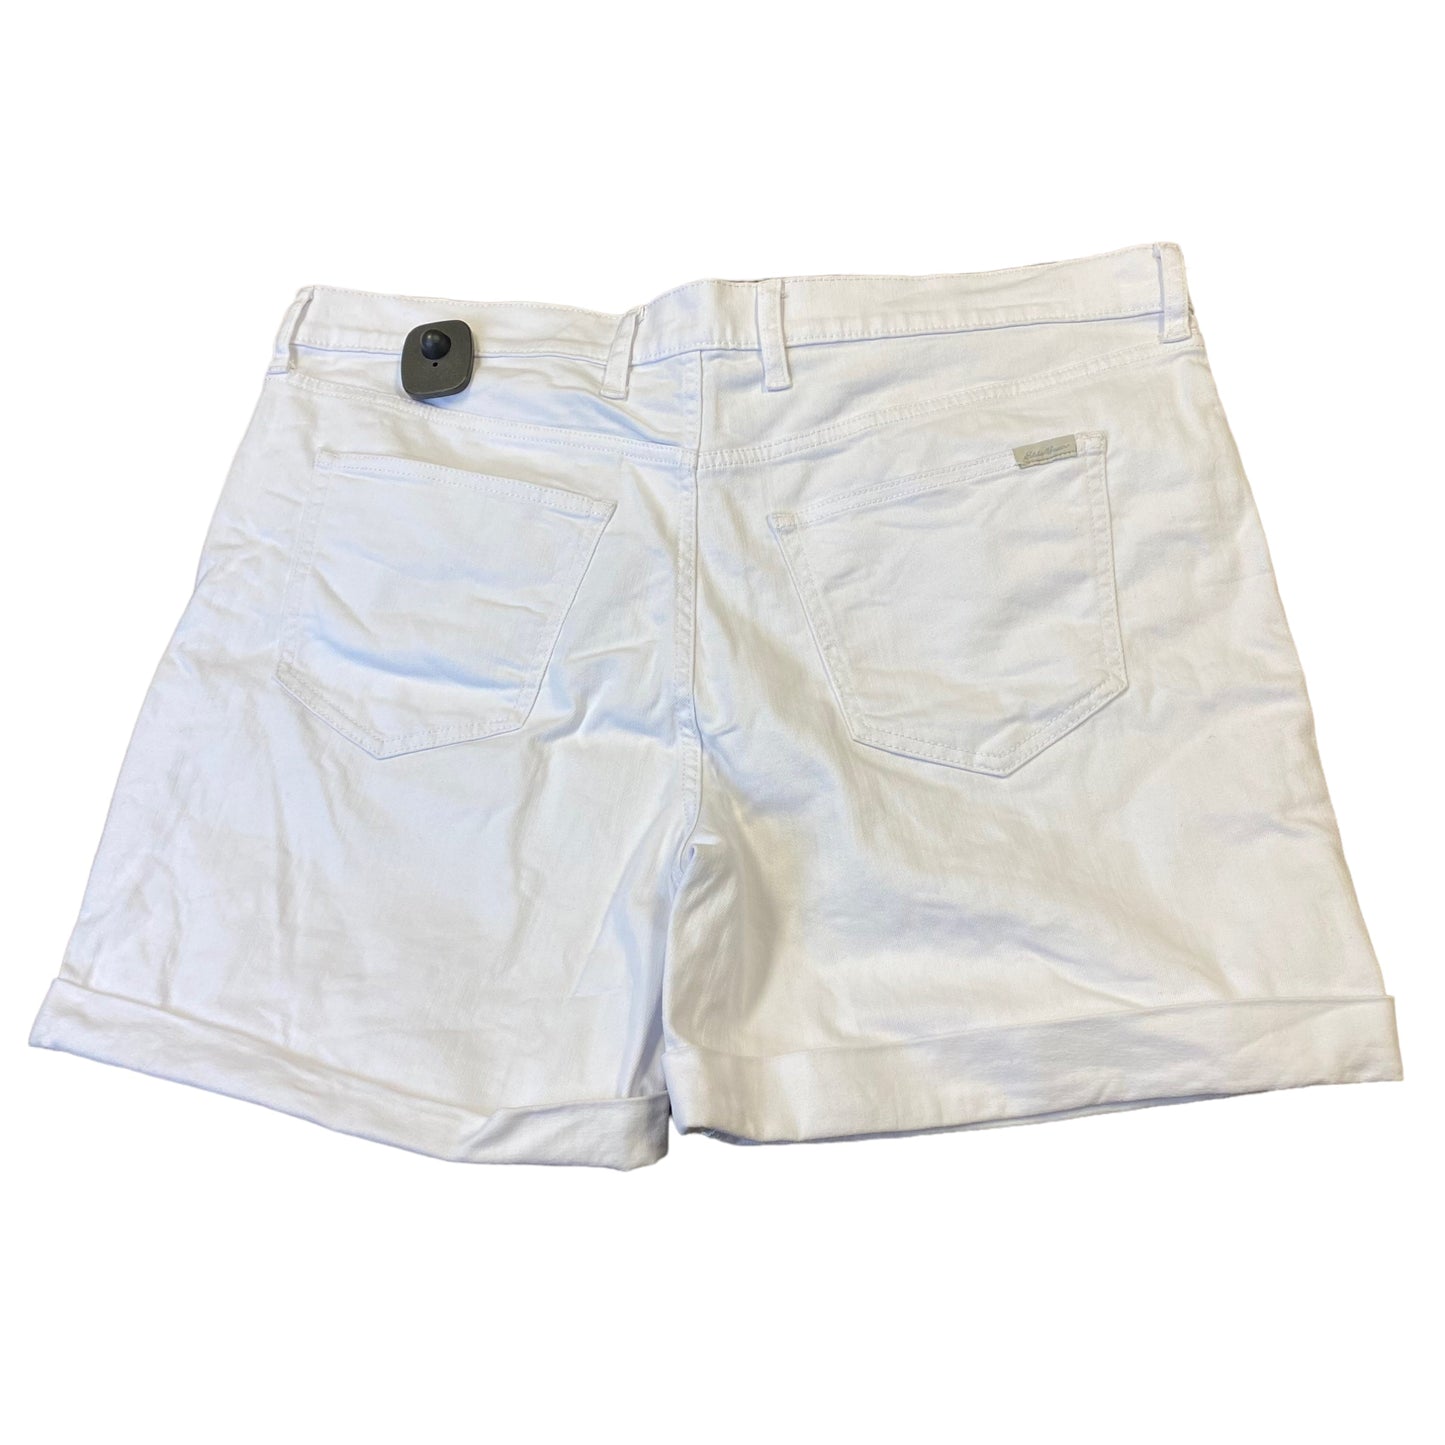 Shorts By Eddie Bauer  Size: 14